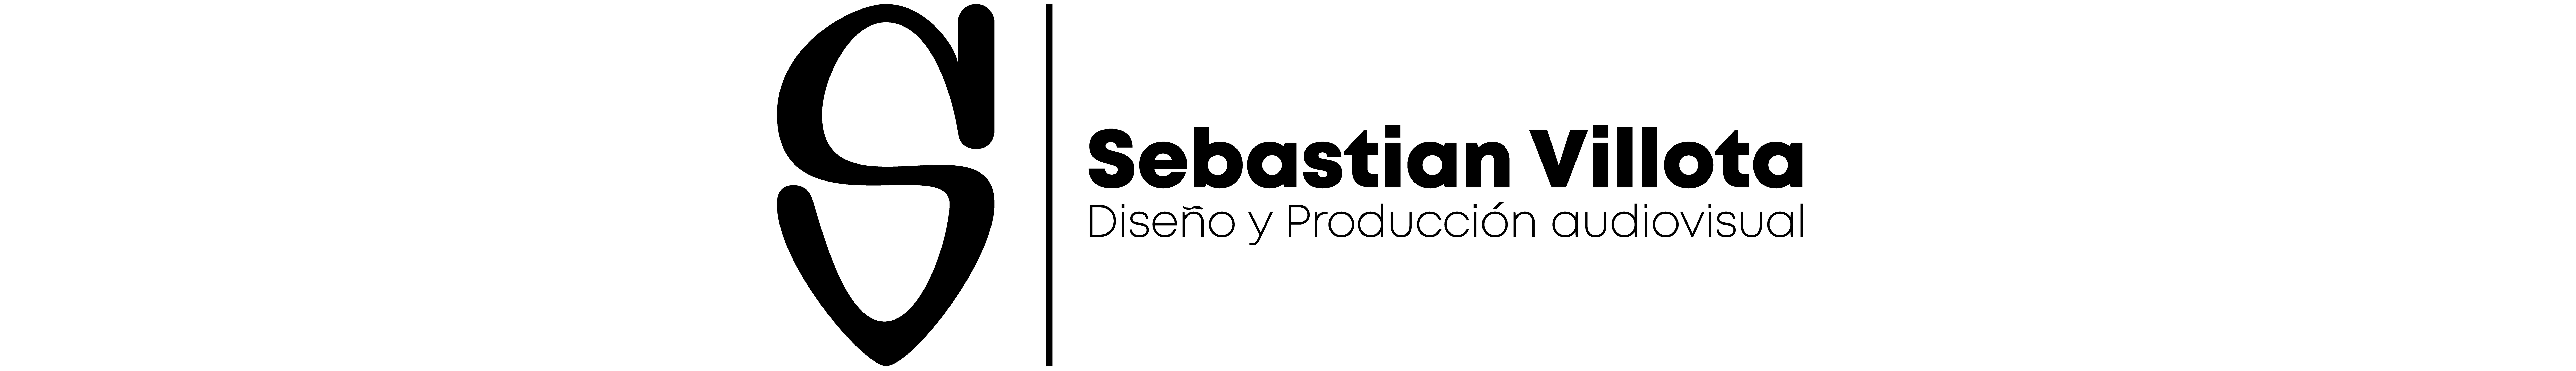 Banner profilu uživatele Sebastian Villota